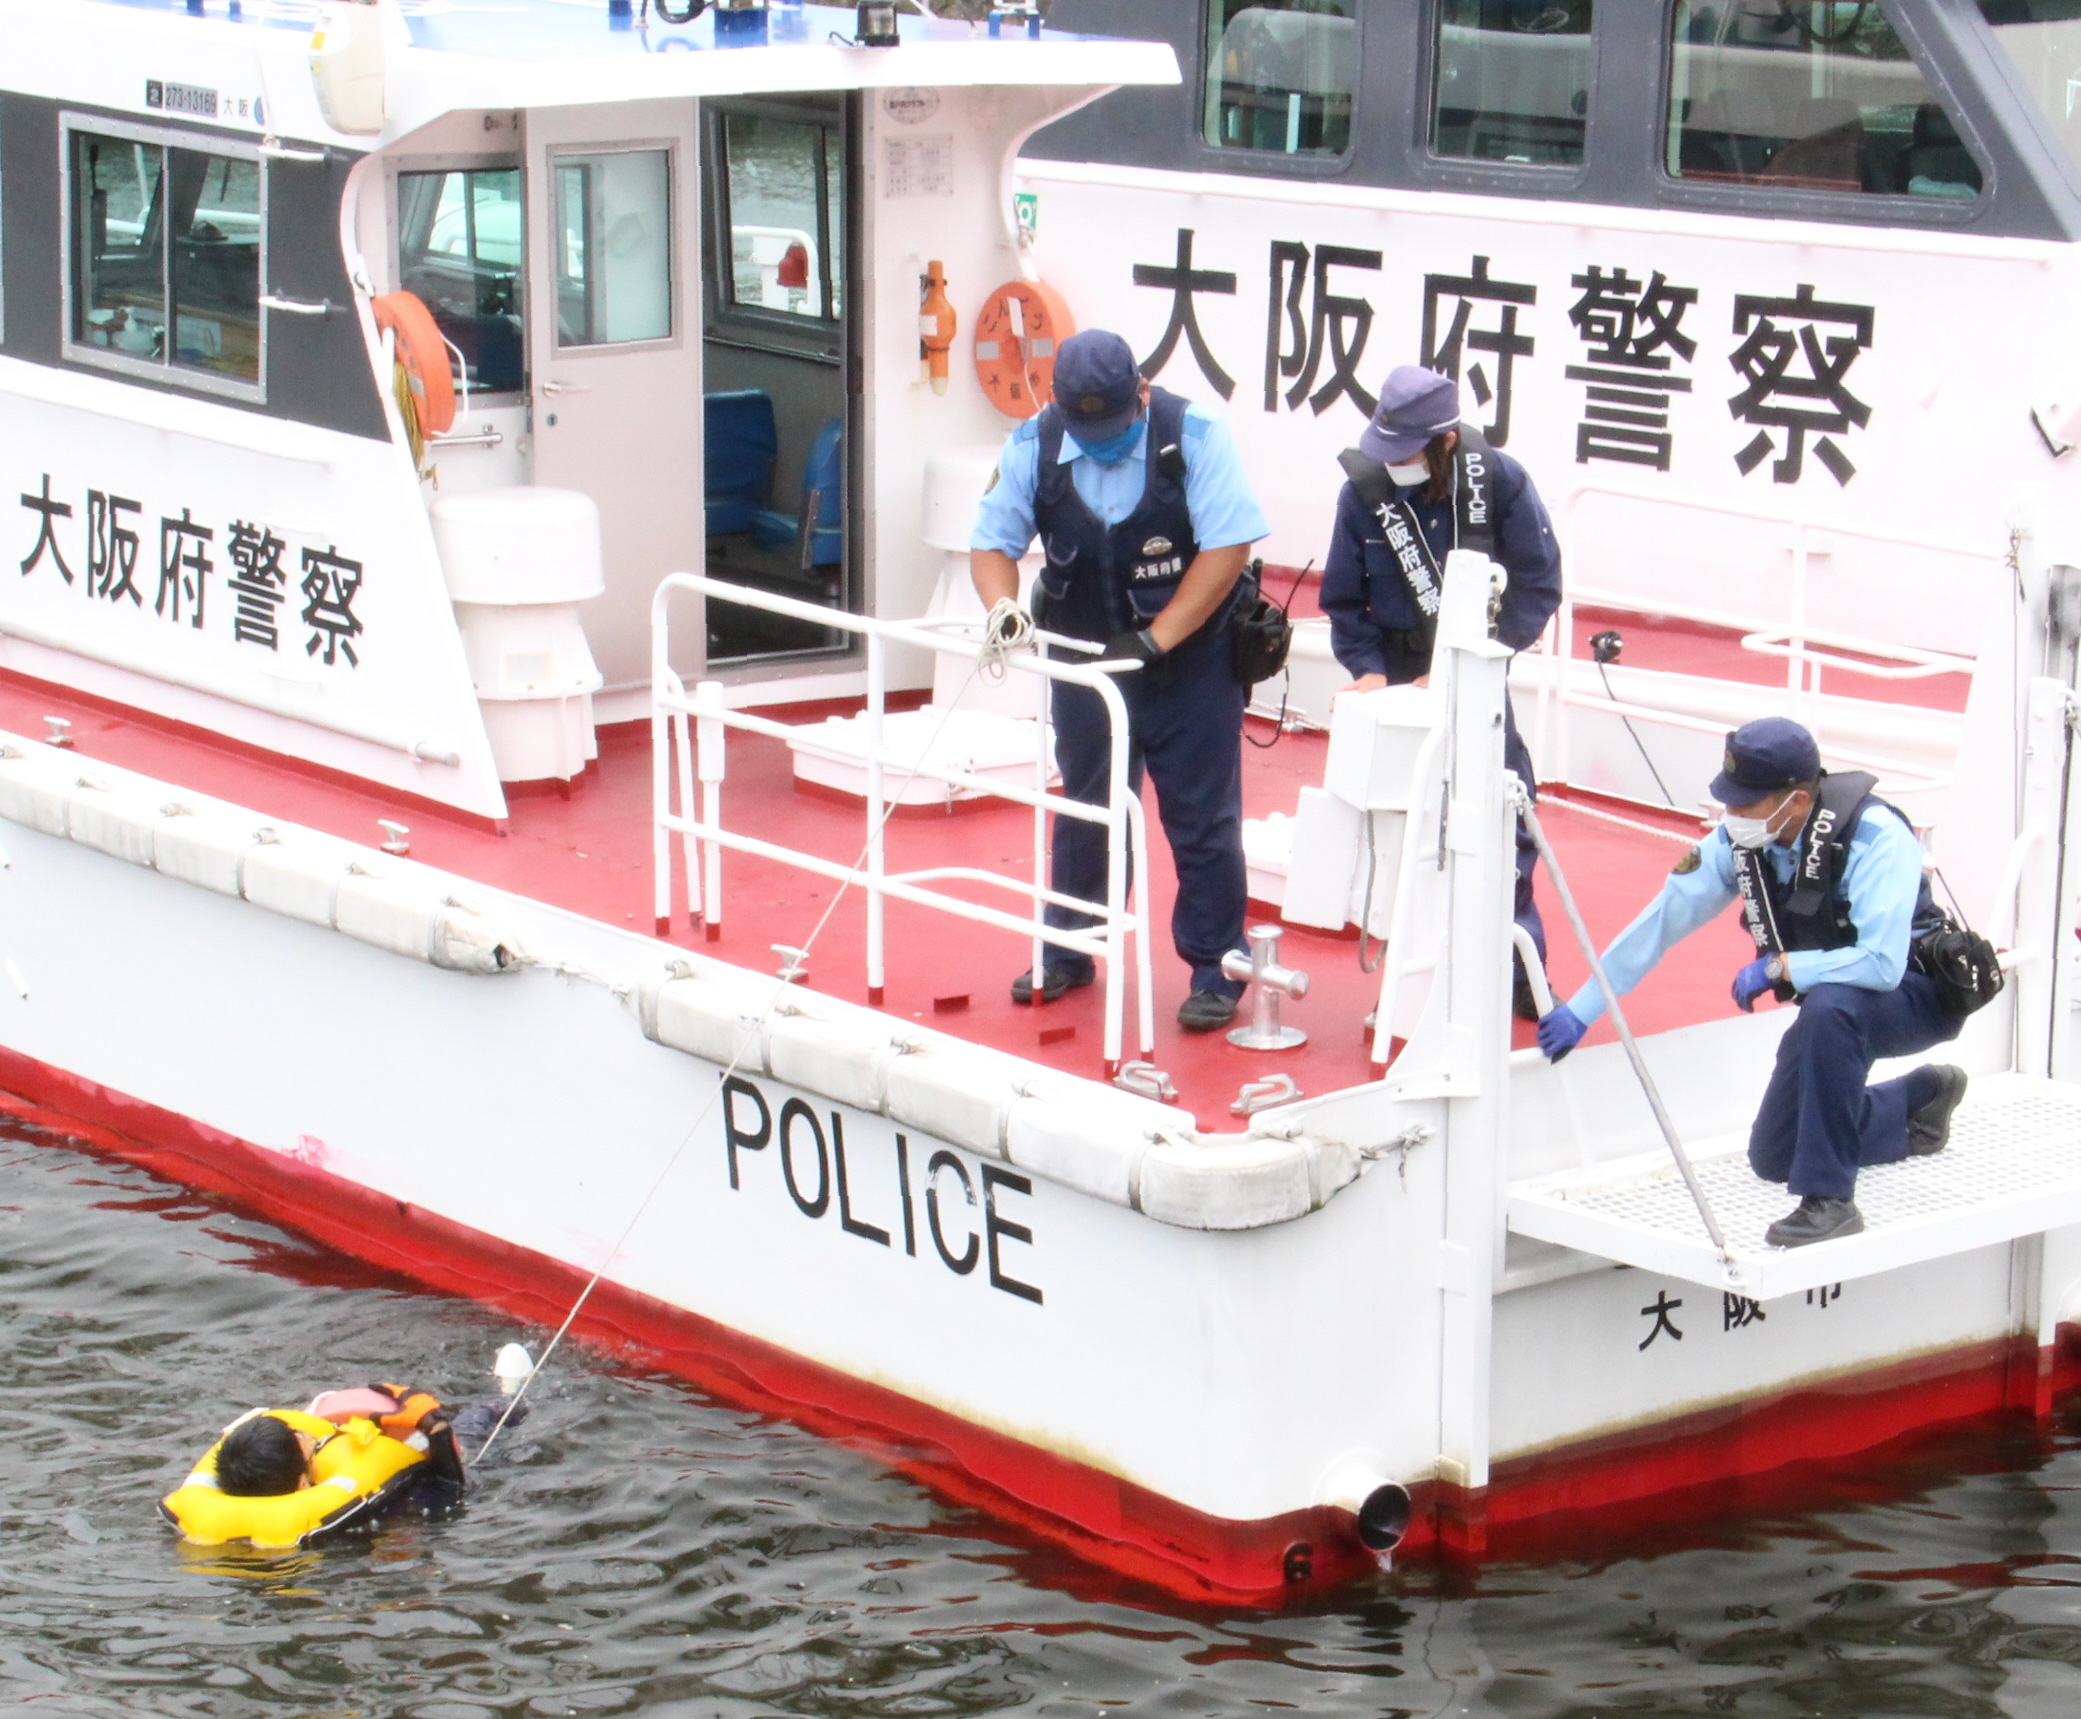 大阪府警初の女性船舶職員、奮闘 水難救助訓練 - 産経ニュース